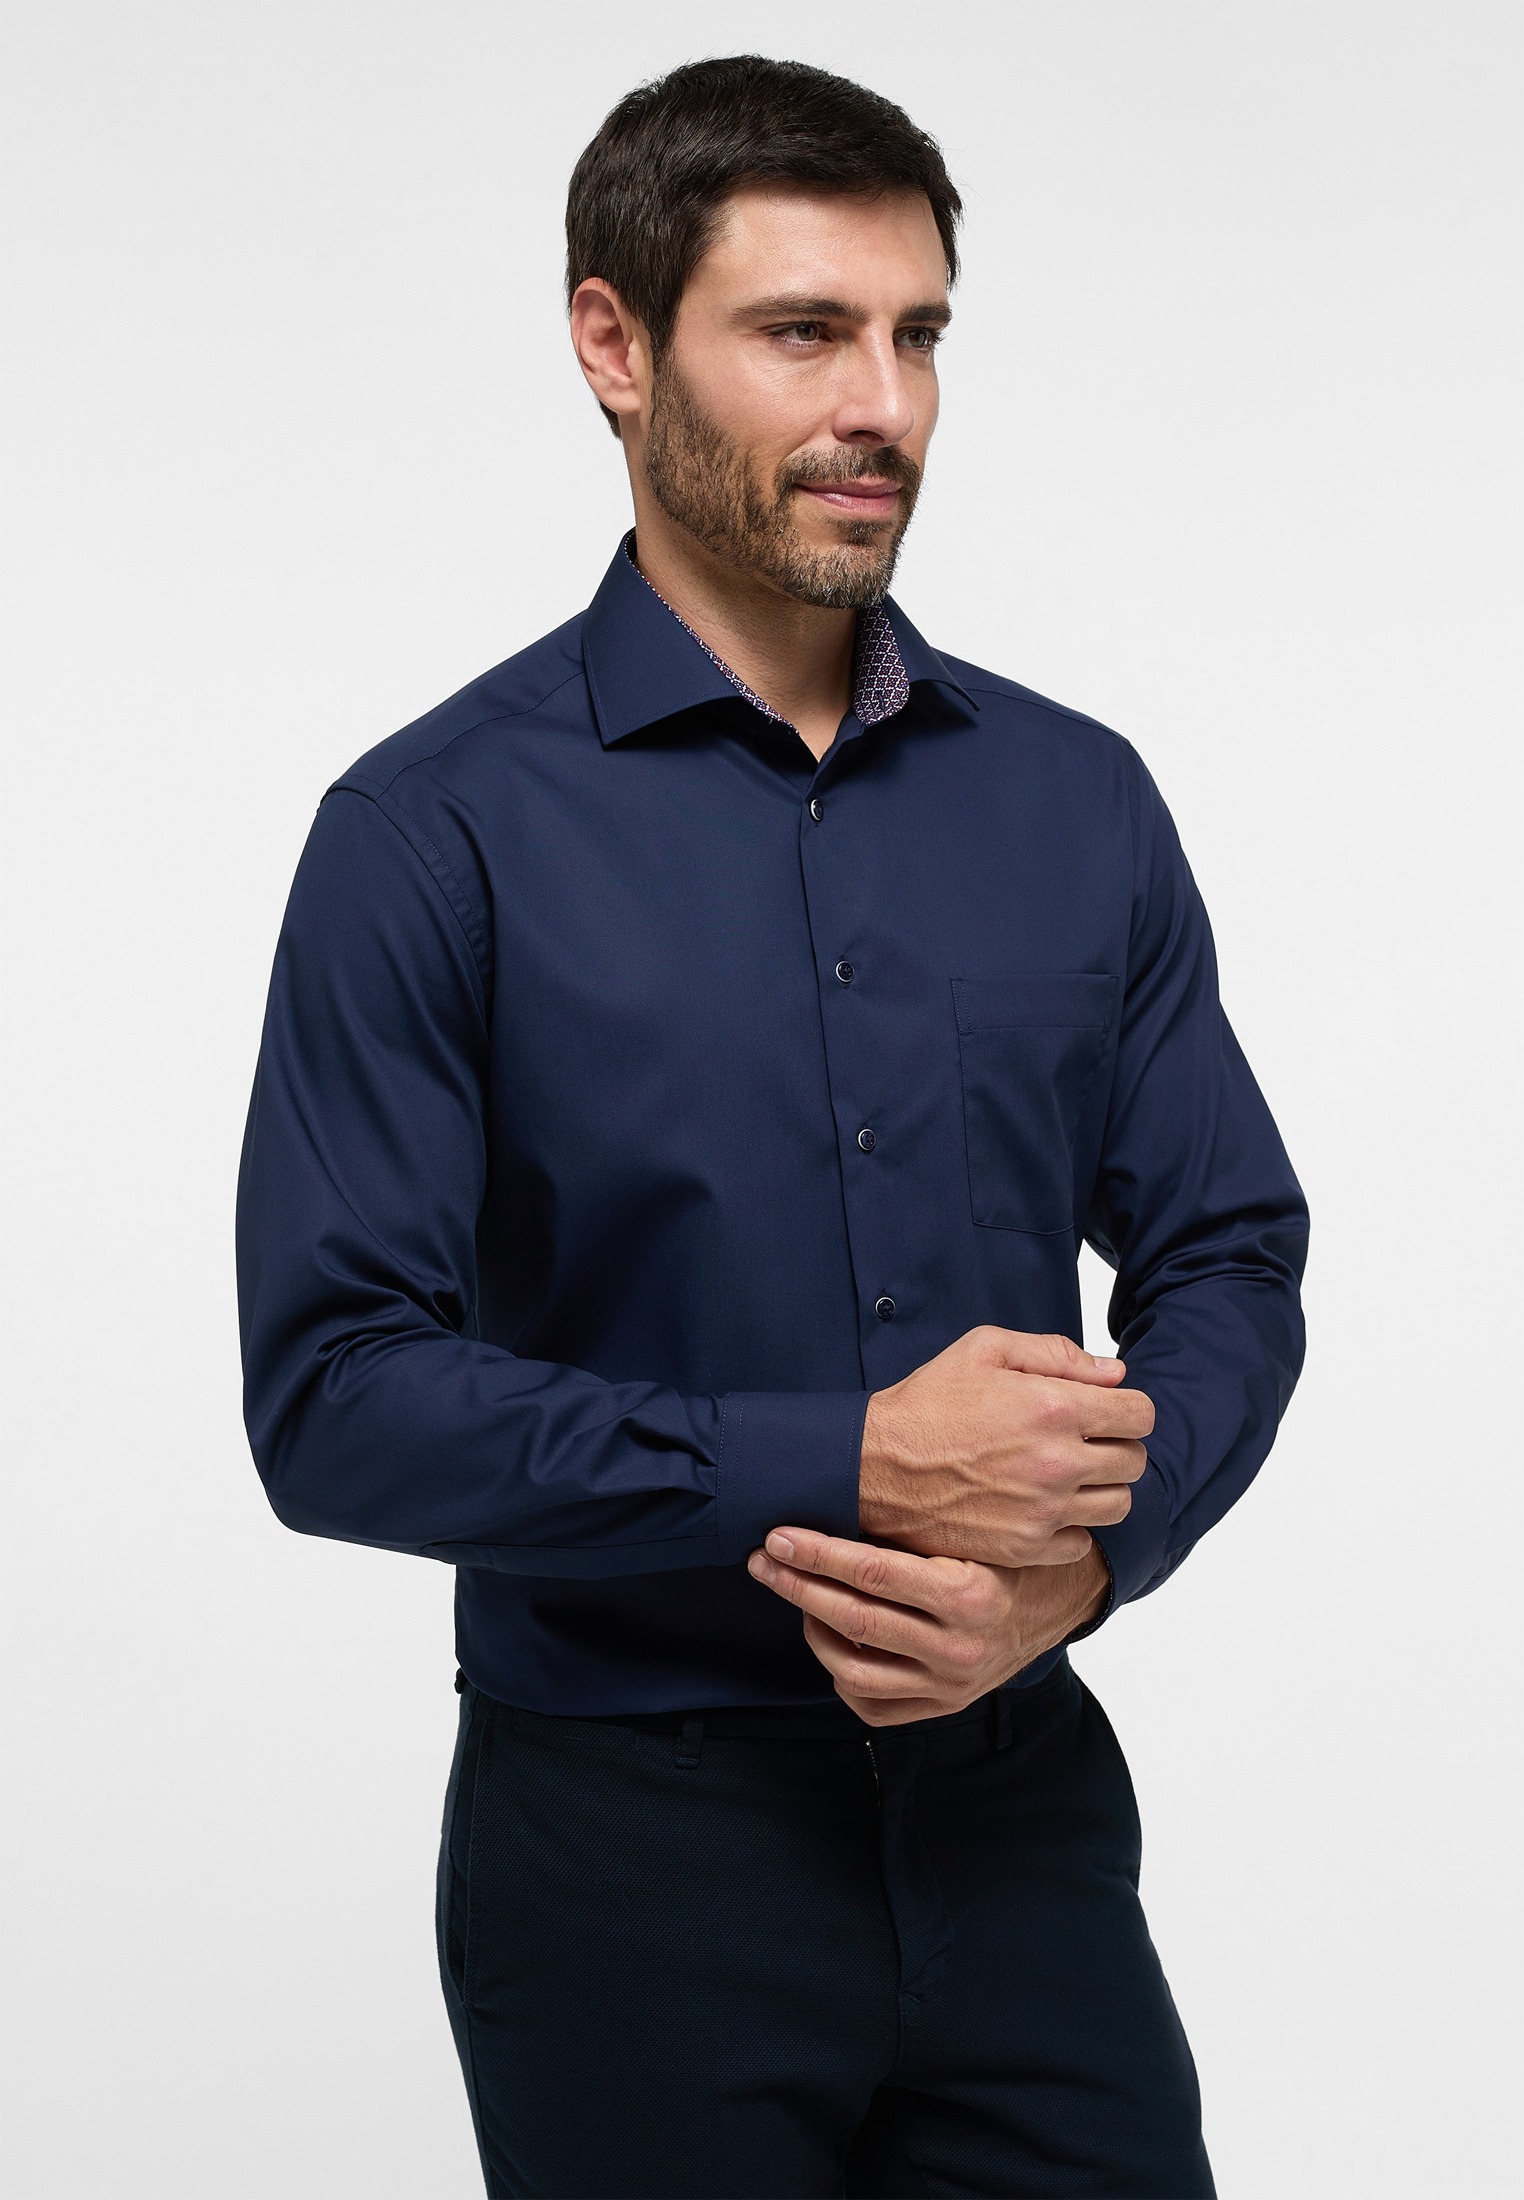 Original shirt • Modern fit, poplin, limited stock (1300) - First For Men